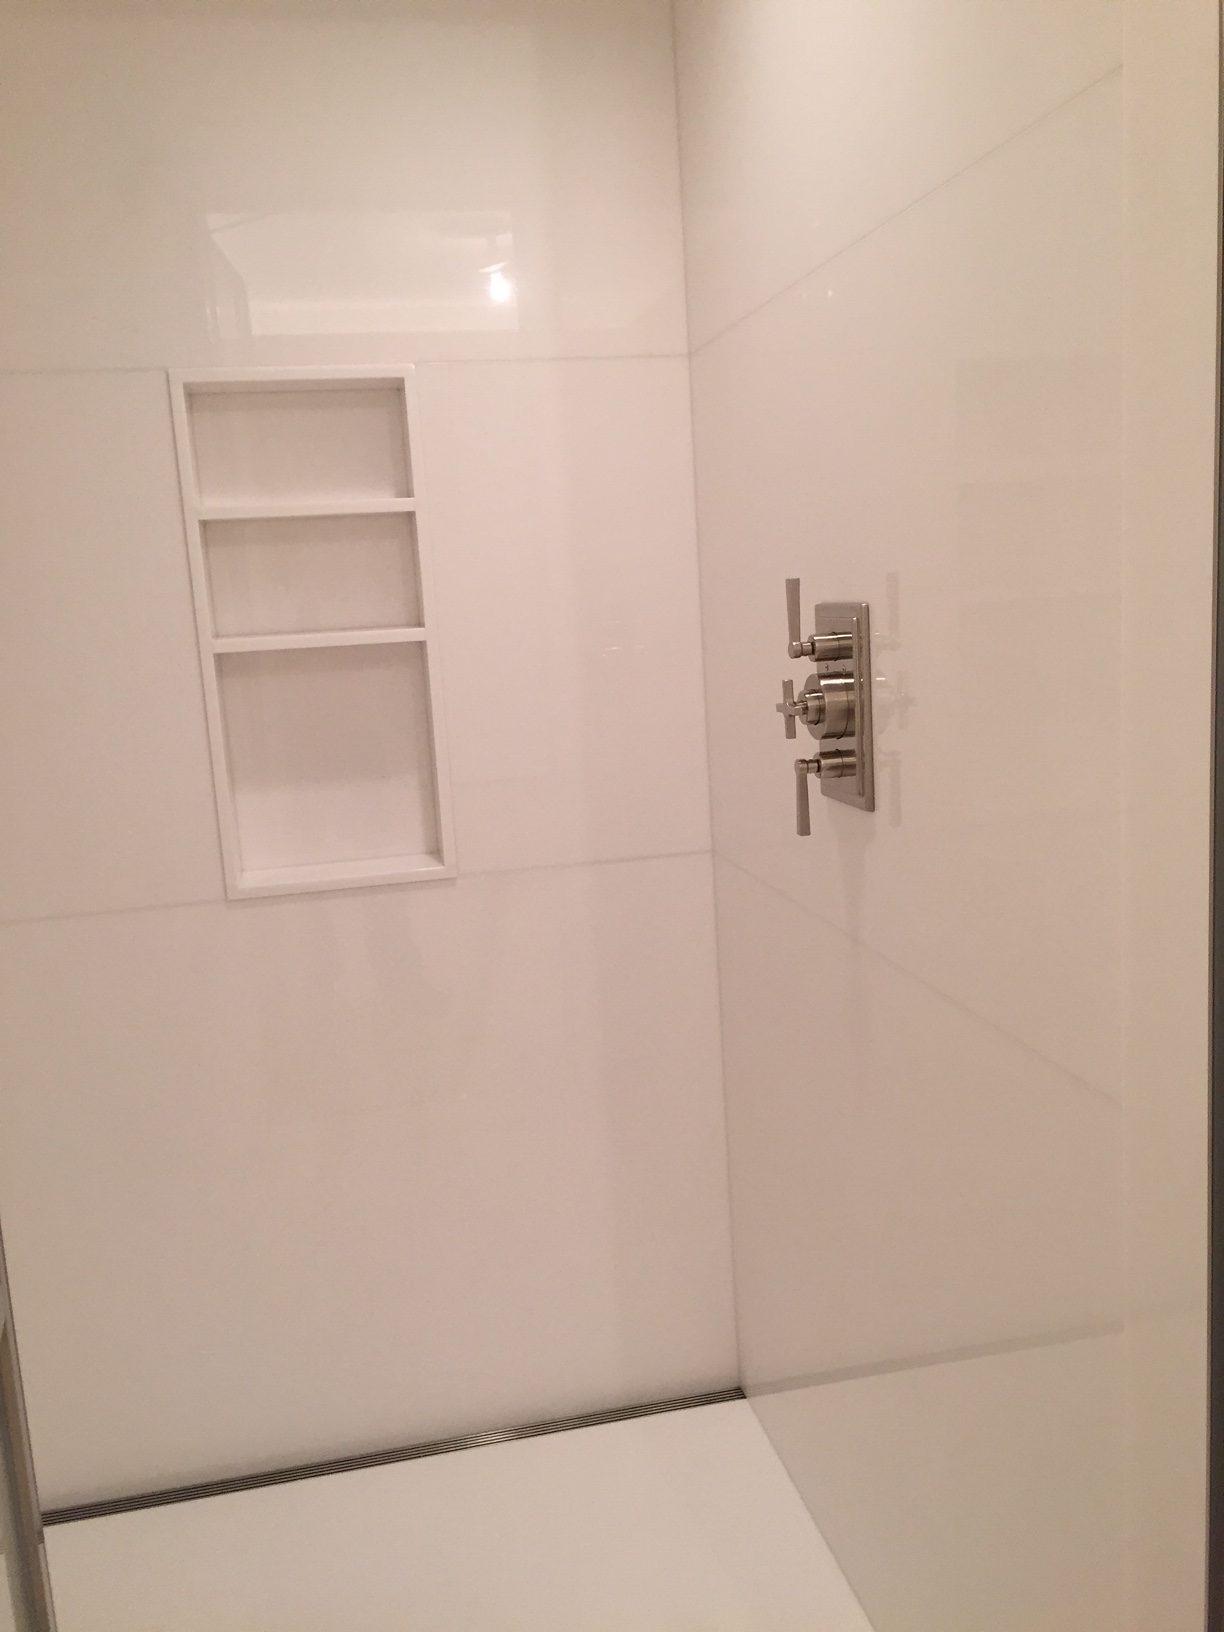 Master bathroom shower in white thassos slab